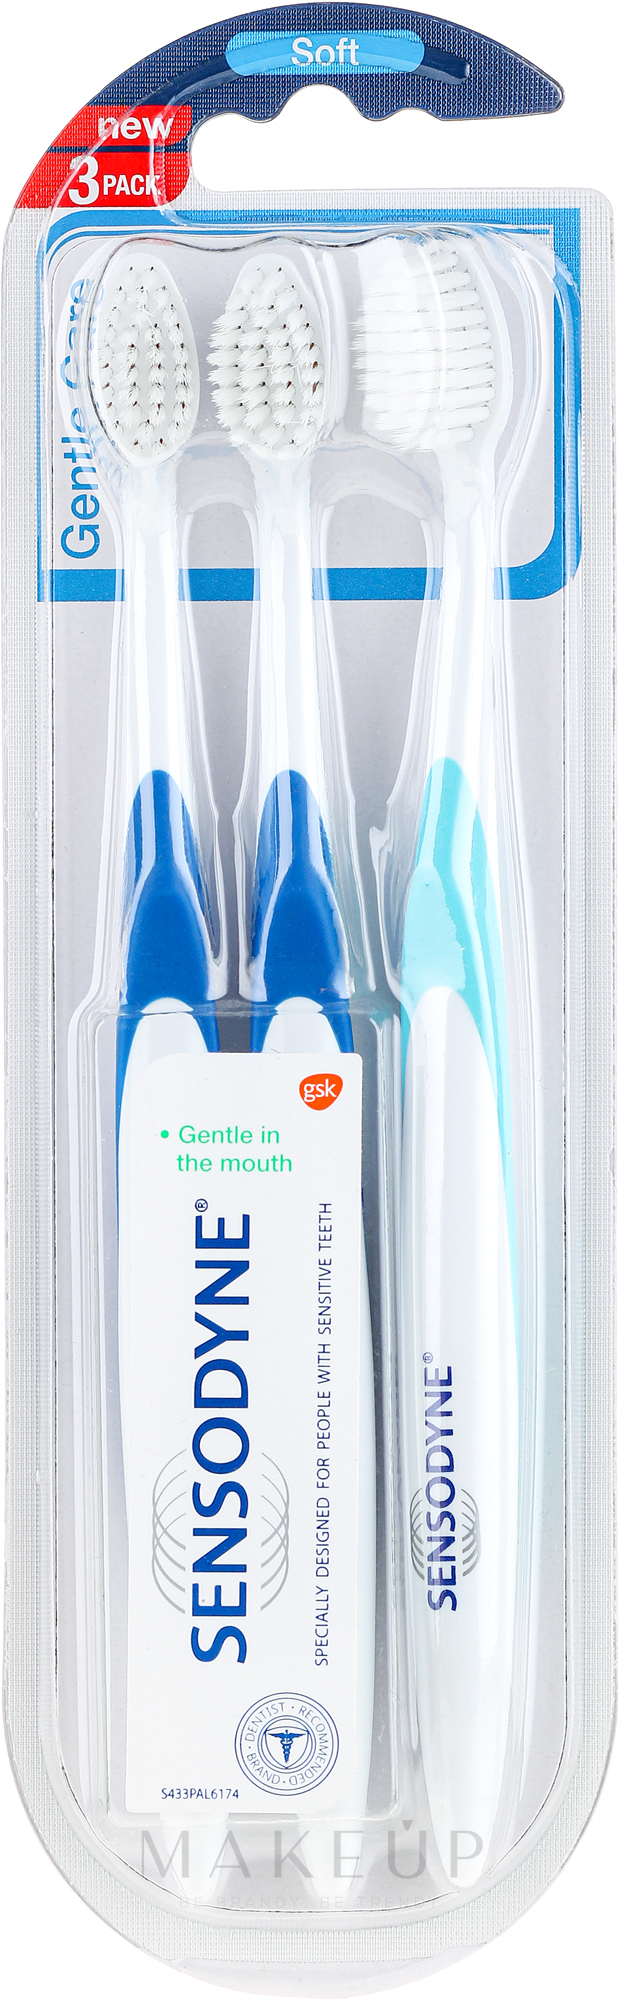 Zahnbürste weich Gentle Care hellblau, blau 3 St. - Sensodyne Gentle Care Soft Toothbruhs — Bild 3 St.